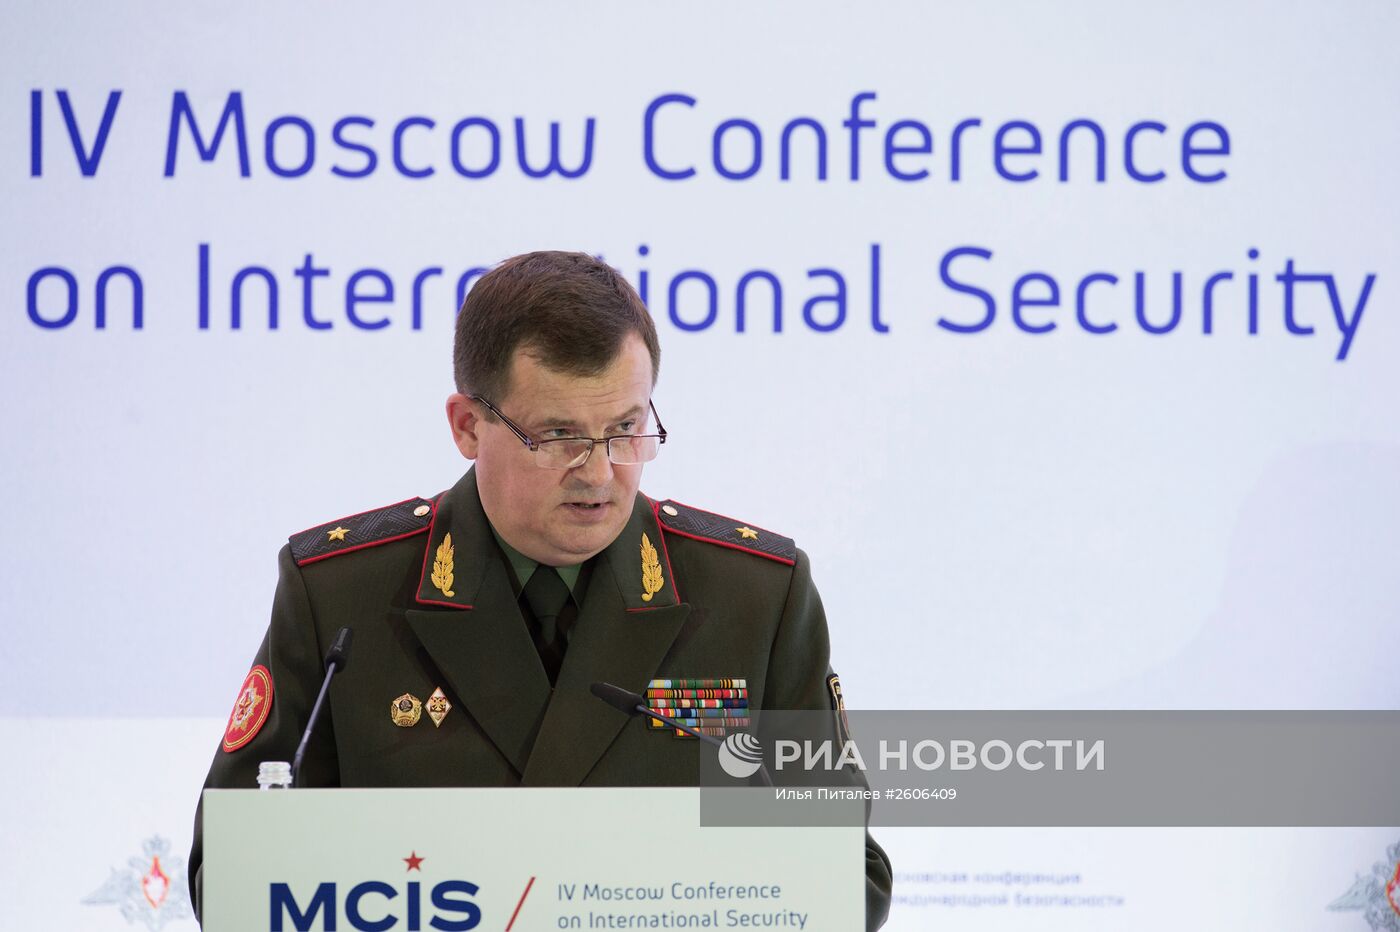 IV Московская Конференция по международной безопасности